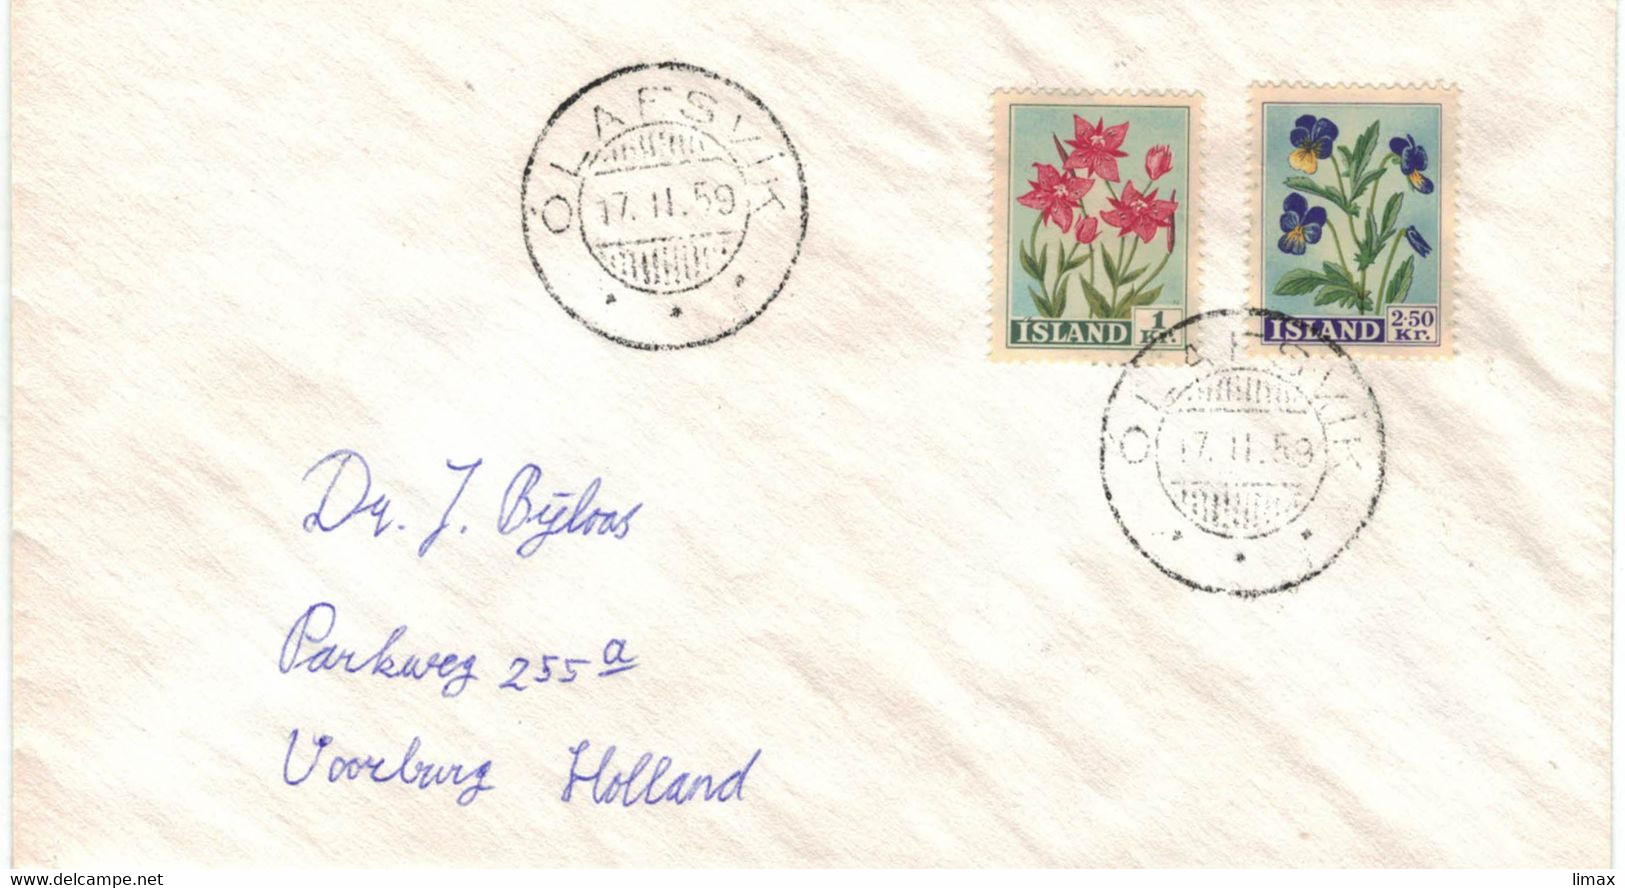 Island Olafsvik Island 1959 - Epilobium Weidenröschen Willow Herb - Stiefmütterchen - Blumen - Storia Postale